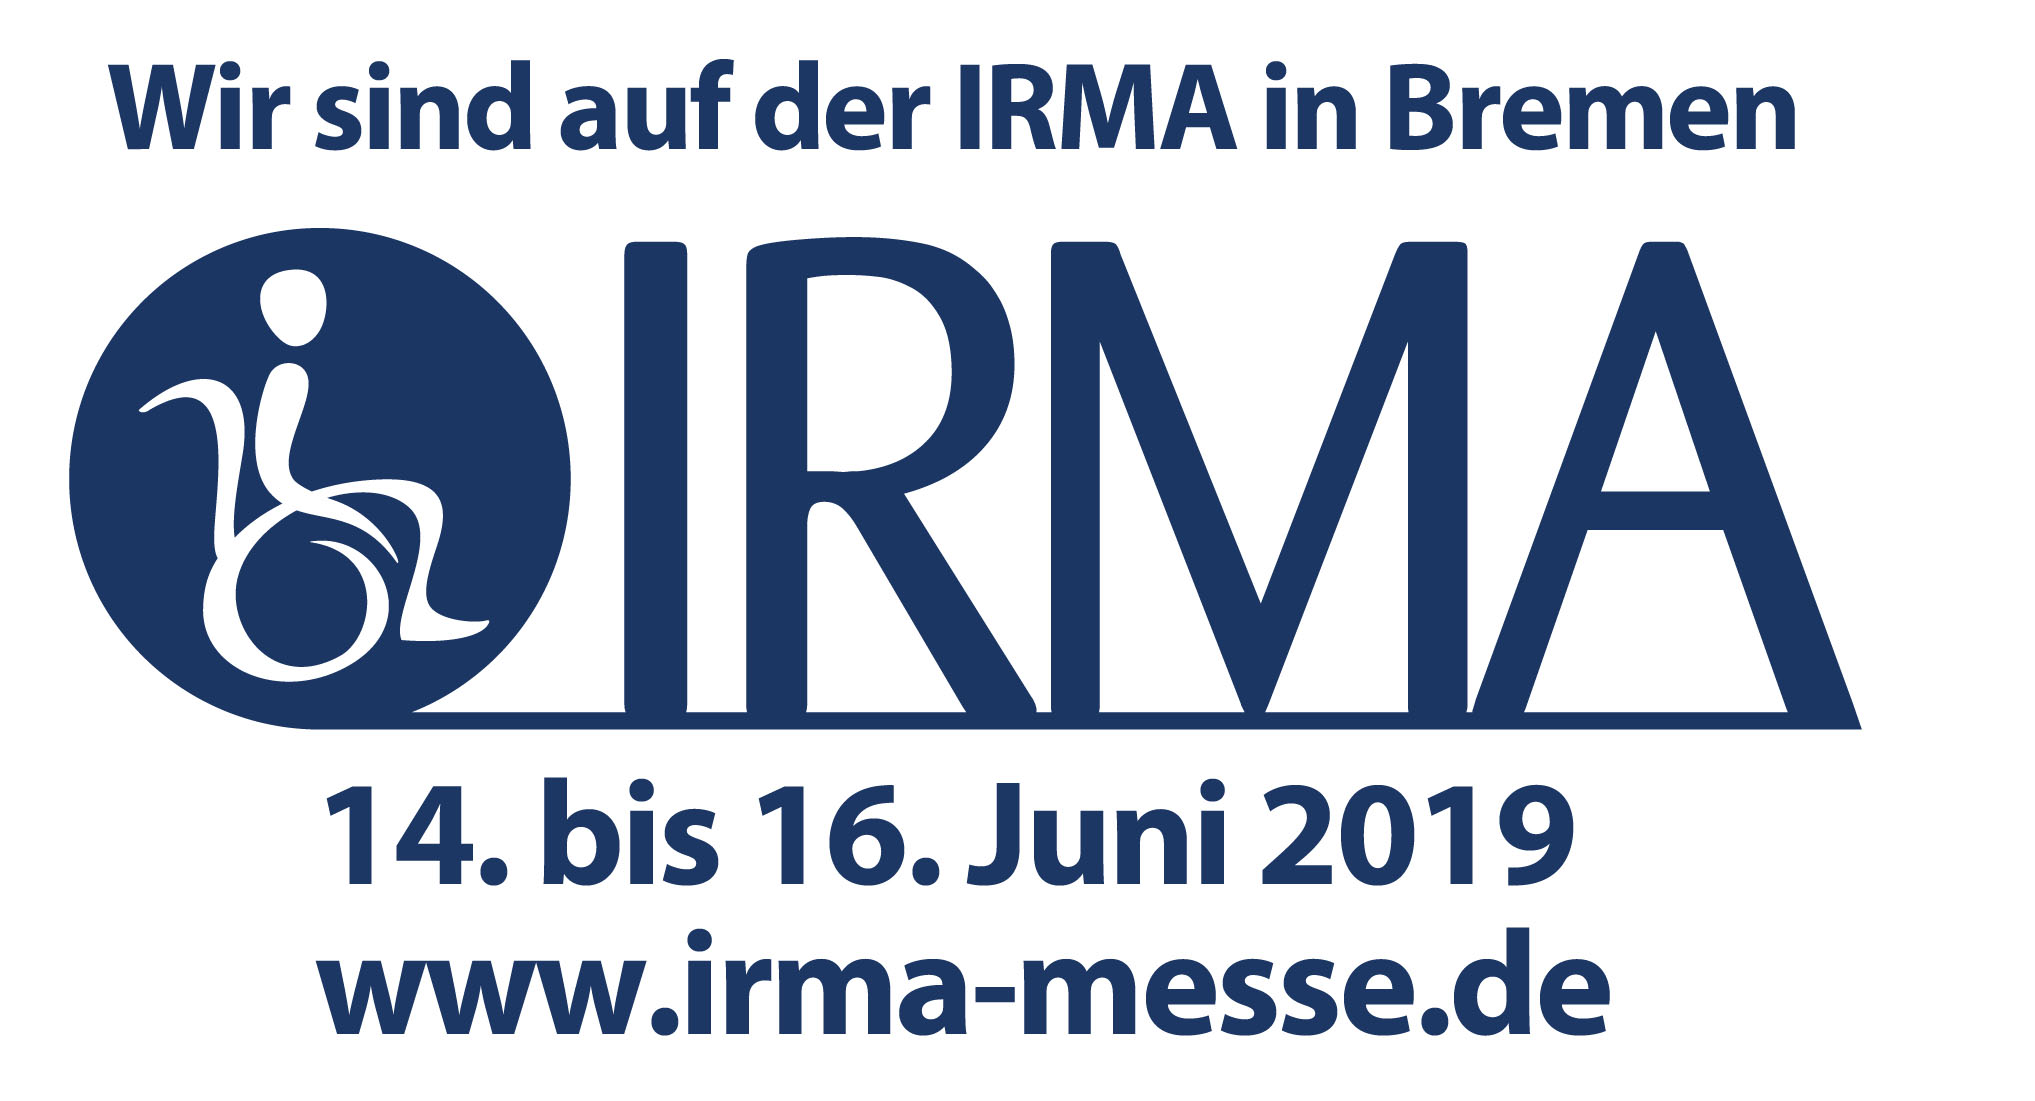 Titelbild zu IRMA 2019 Bremen